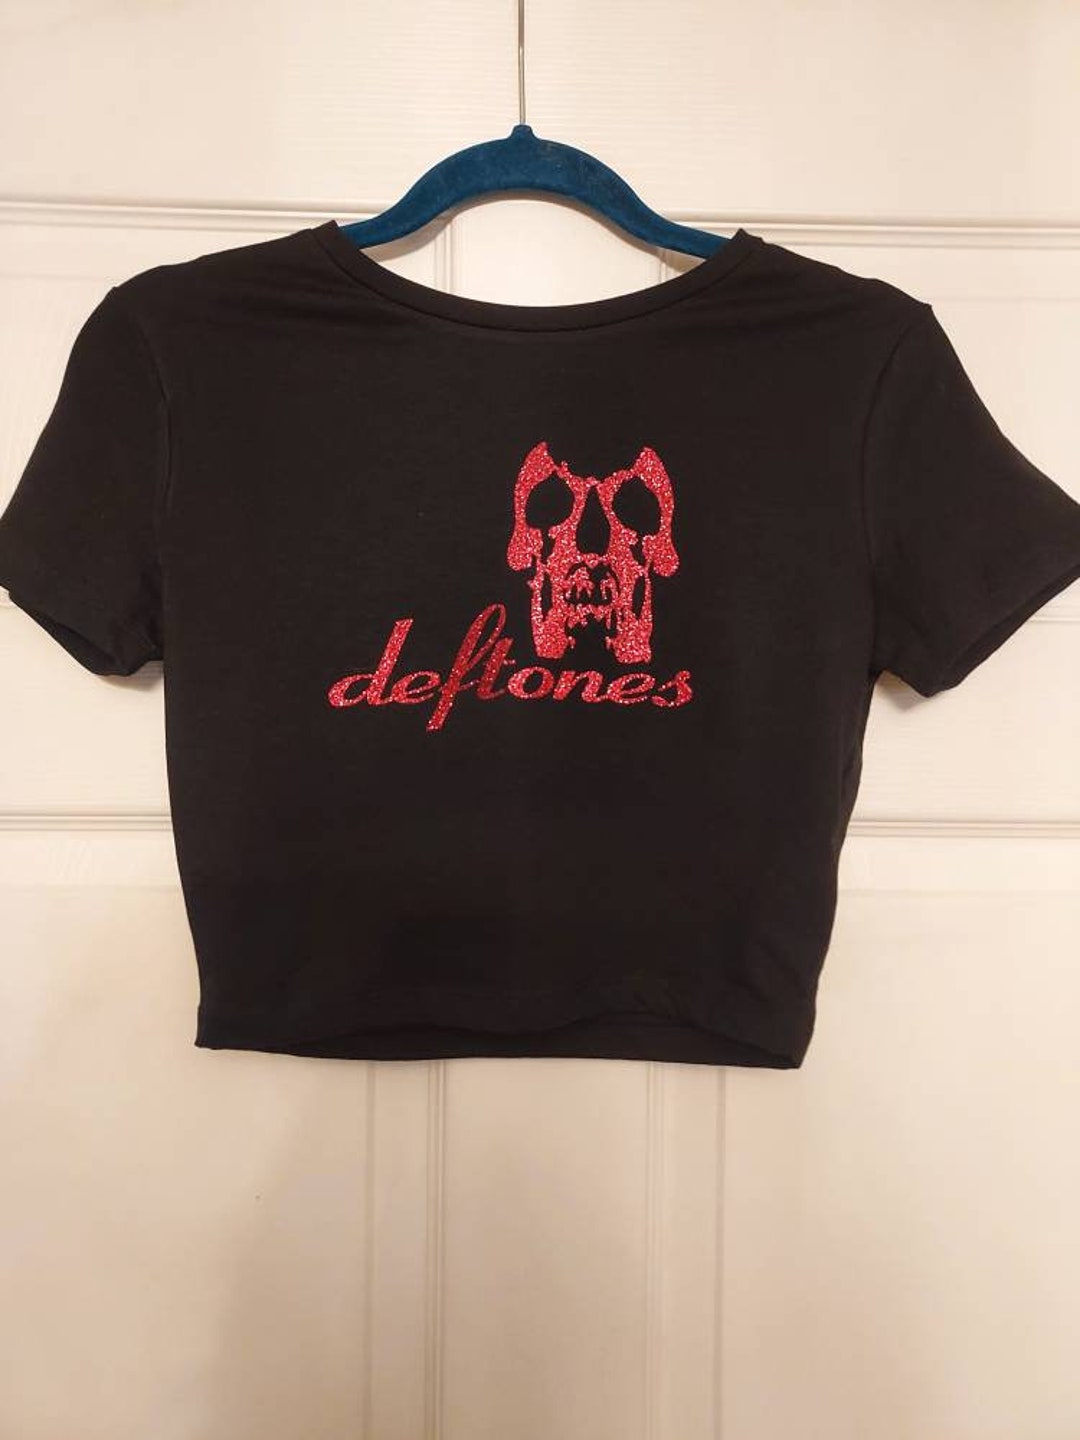 Deftones Crop Top Deftones Baby Tee Deftones Shirt Red Glitter - Etsy